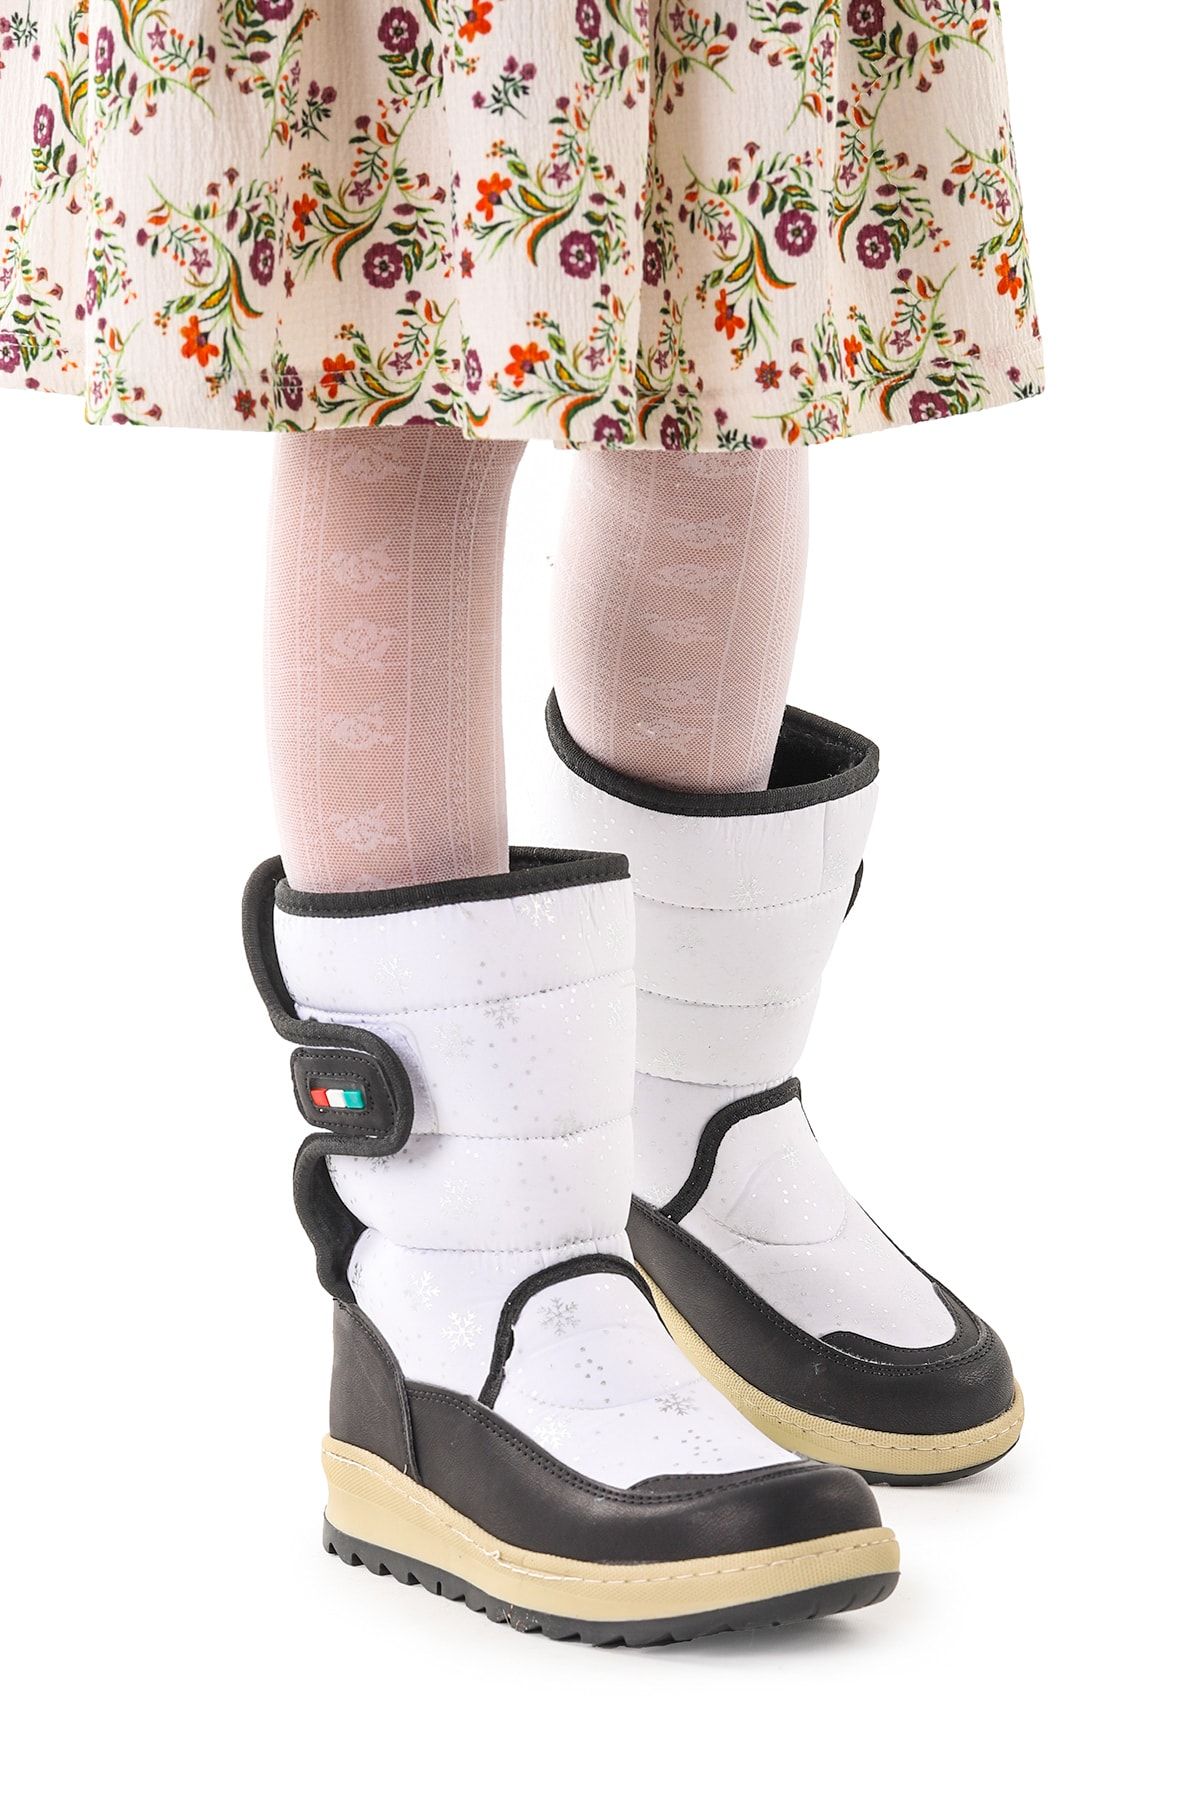 Kiko Kids Kar Desenli Cırtlı Kız Çocuk Kar Bot Ayakkabı